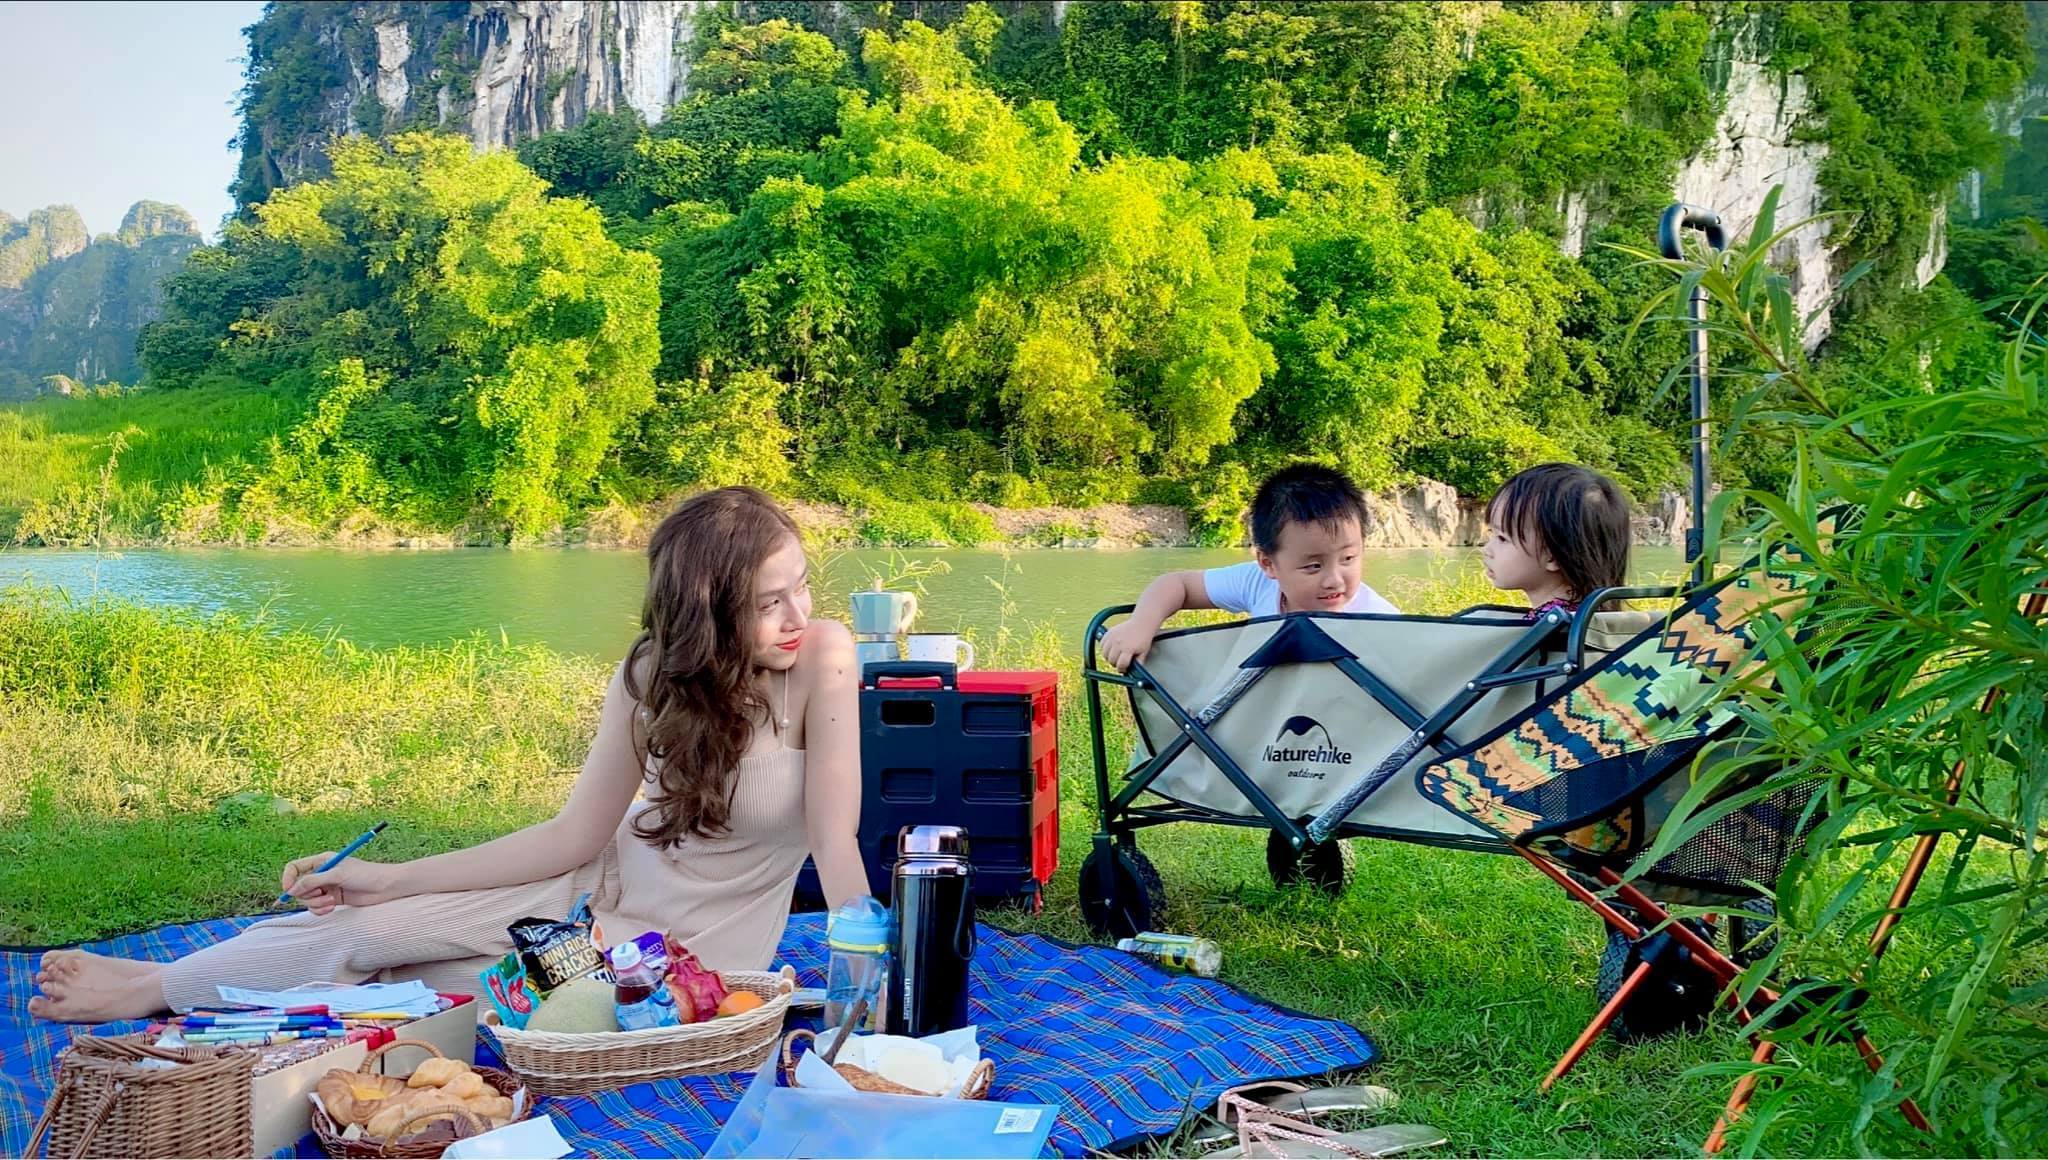 Gia đình Hà Nội nghiện 'ngủ rừng ăn suối', chụp ảnh 'vạn người mê' - 7